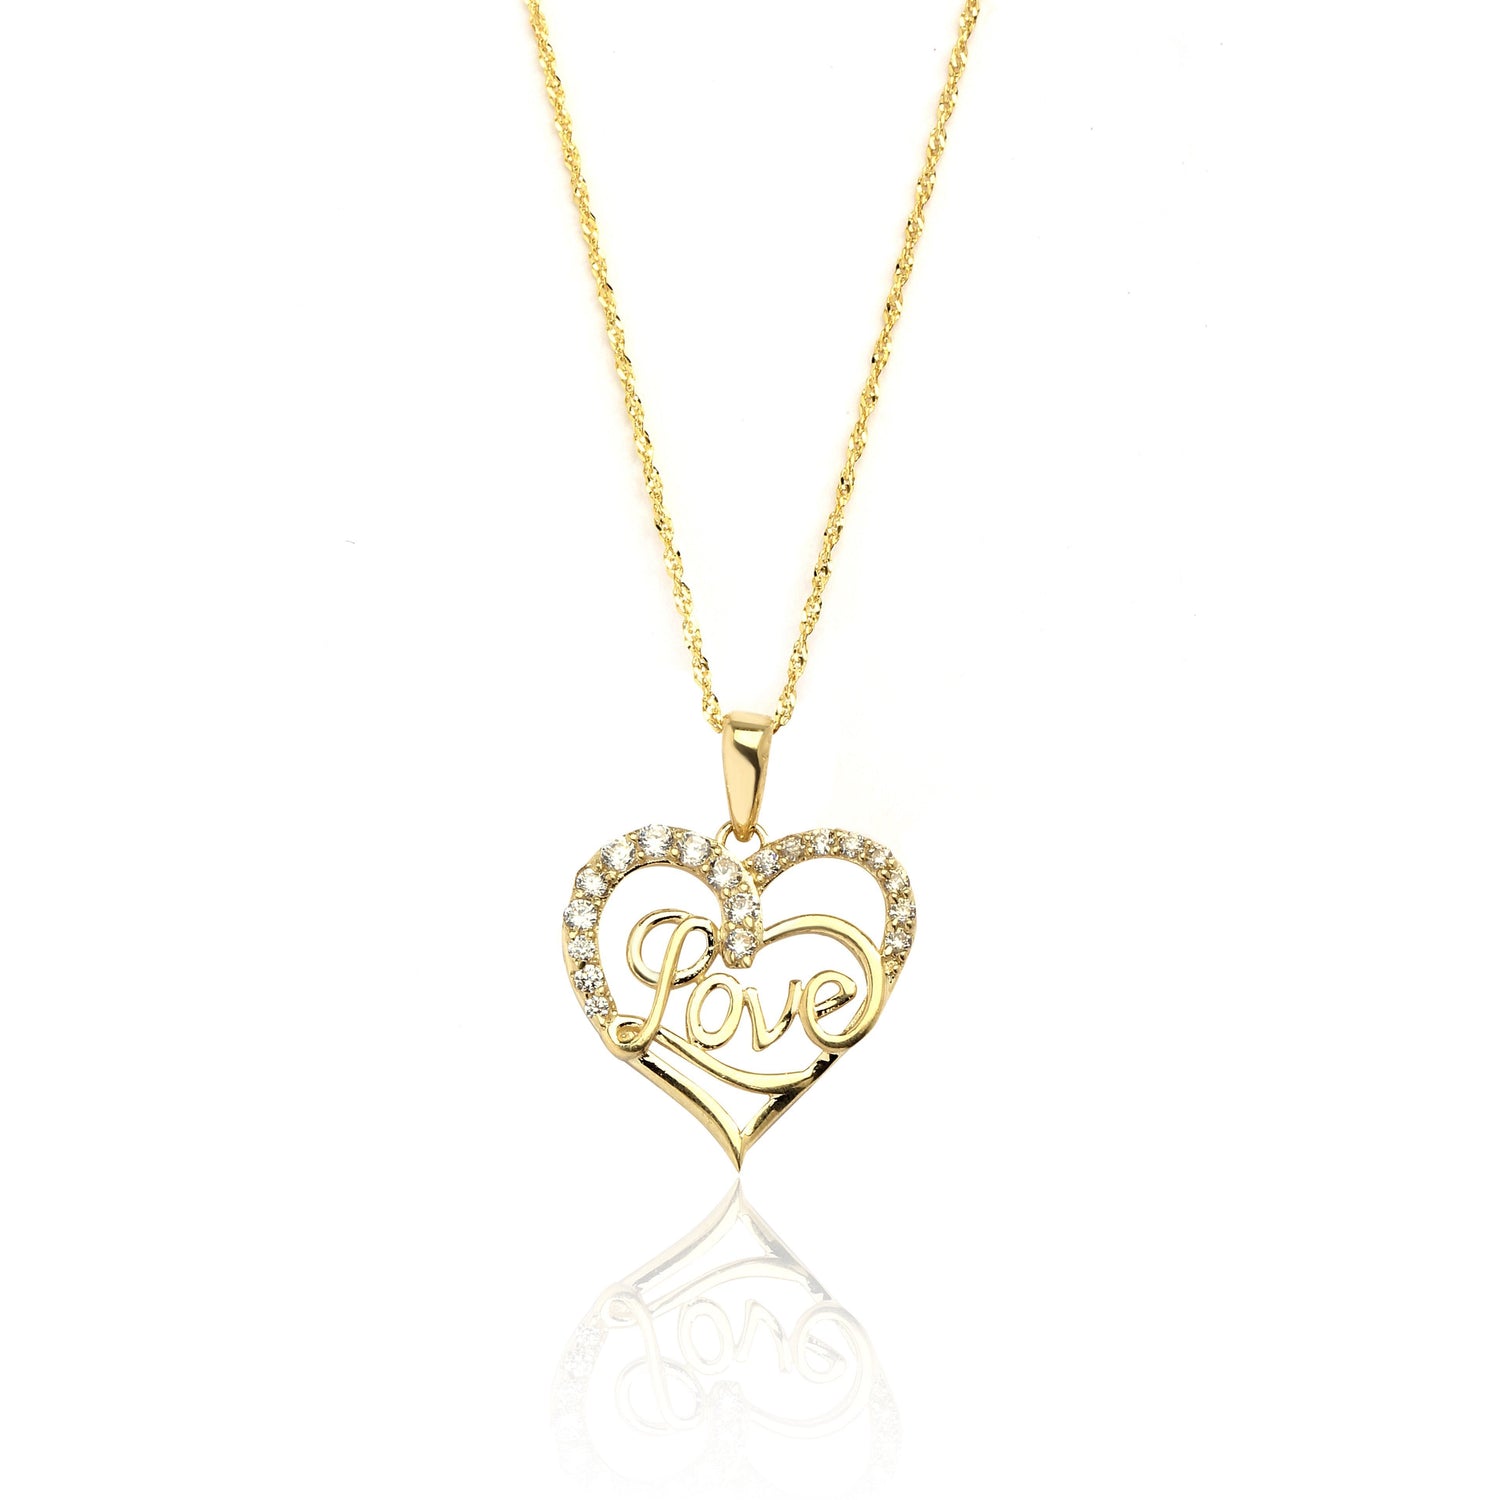 10k Yellow Gold Heart CZ Cursive Love Pendant Necklace